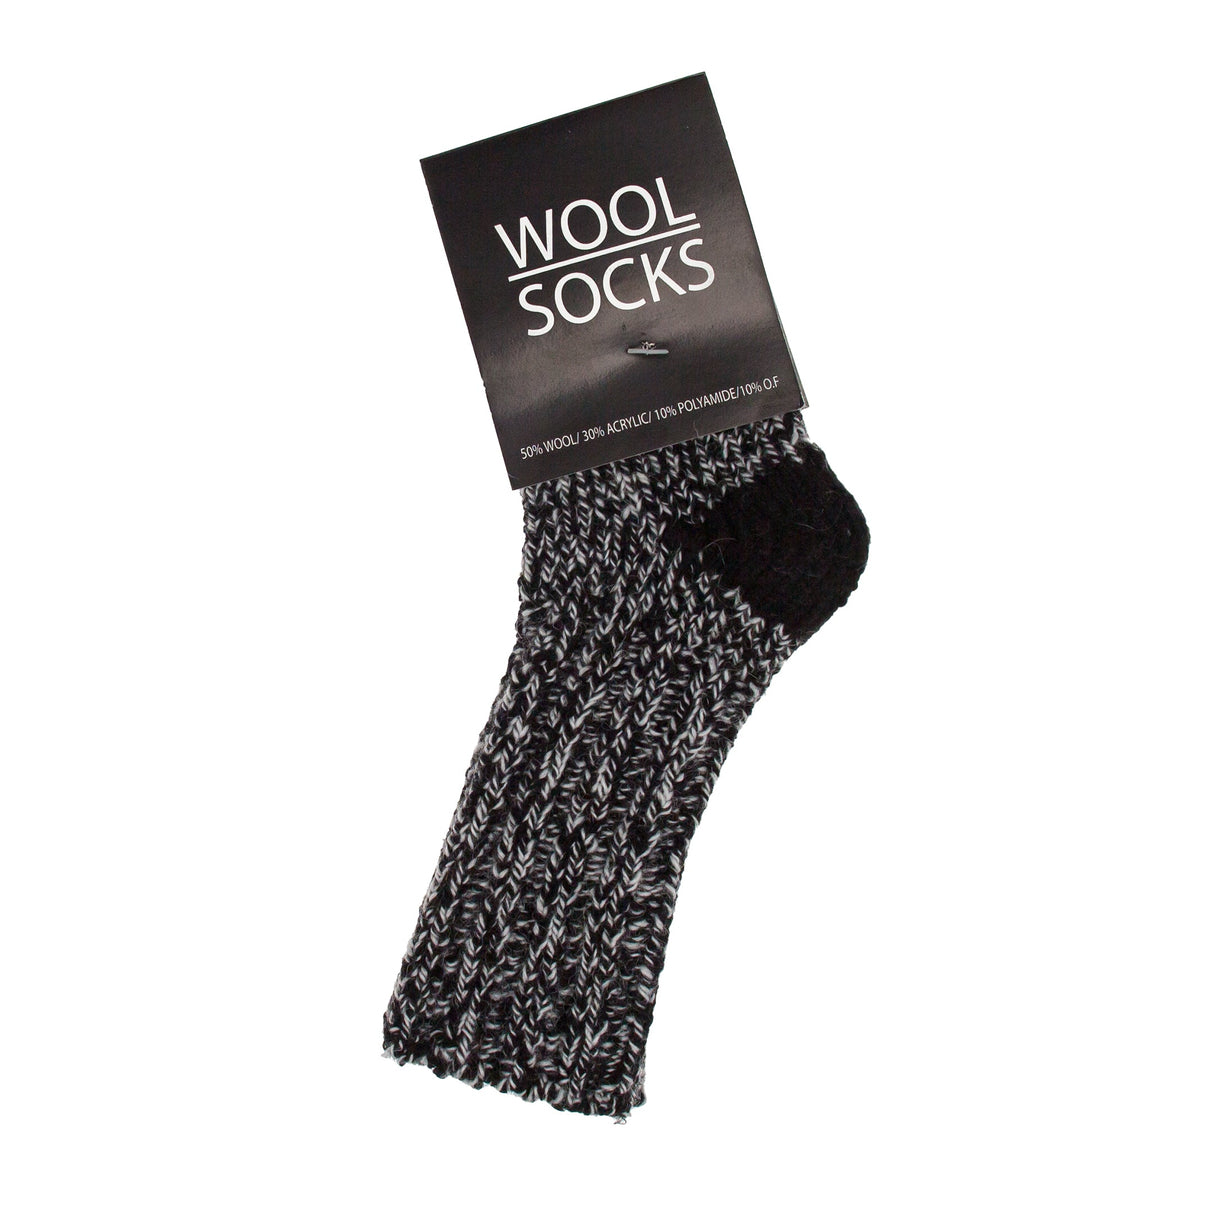 Wool Socks - Ullstrumpor - Svart/Vit Stl 23-27